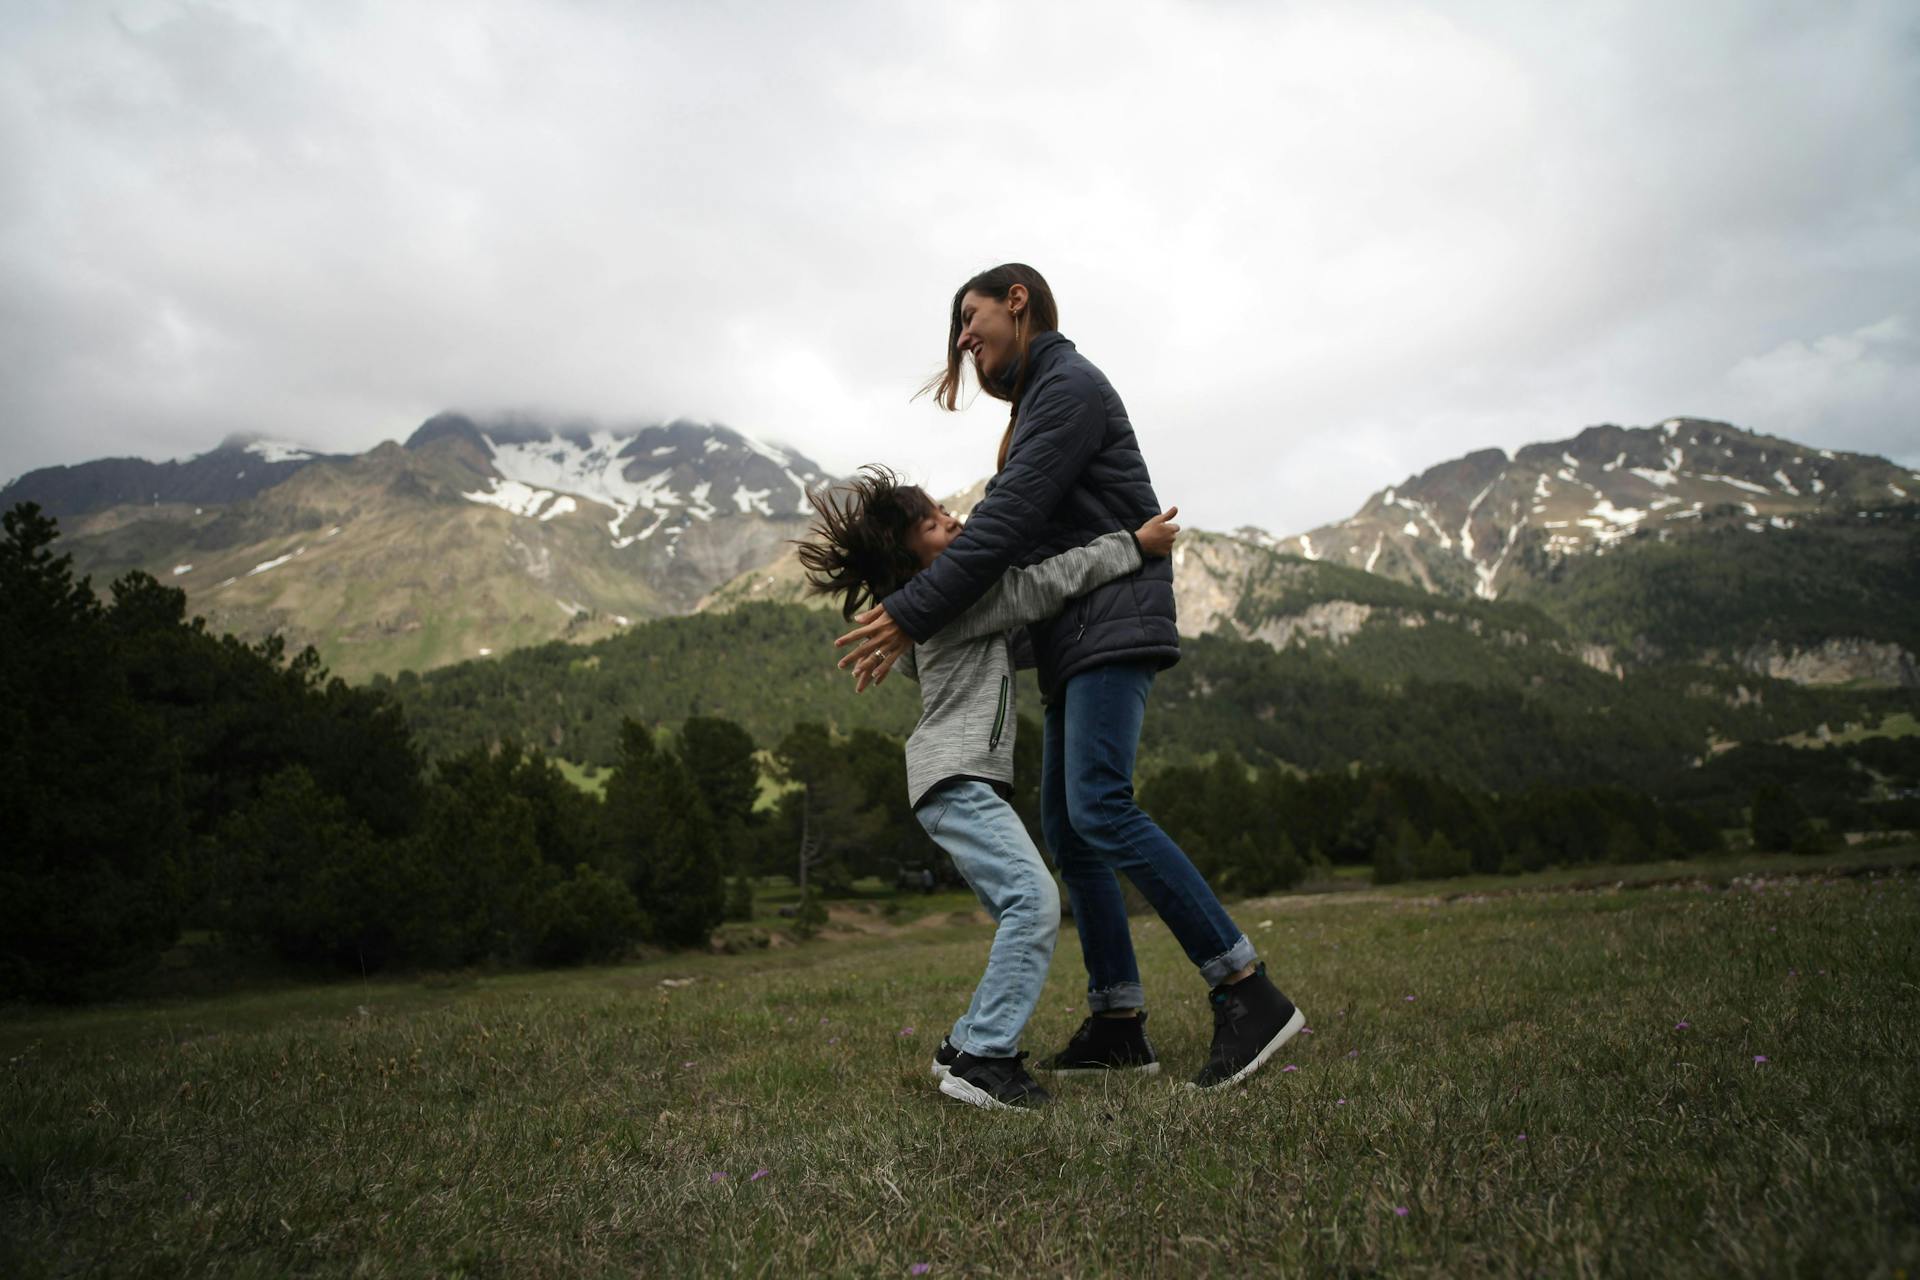 Een afbeelding met een kind en een jongen vrouw tegen samen aan het spelen zijn. Op de achtergrond zijn ligt besneeuwde bergen te zien. Een erg authentiek plaatje.